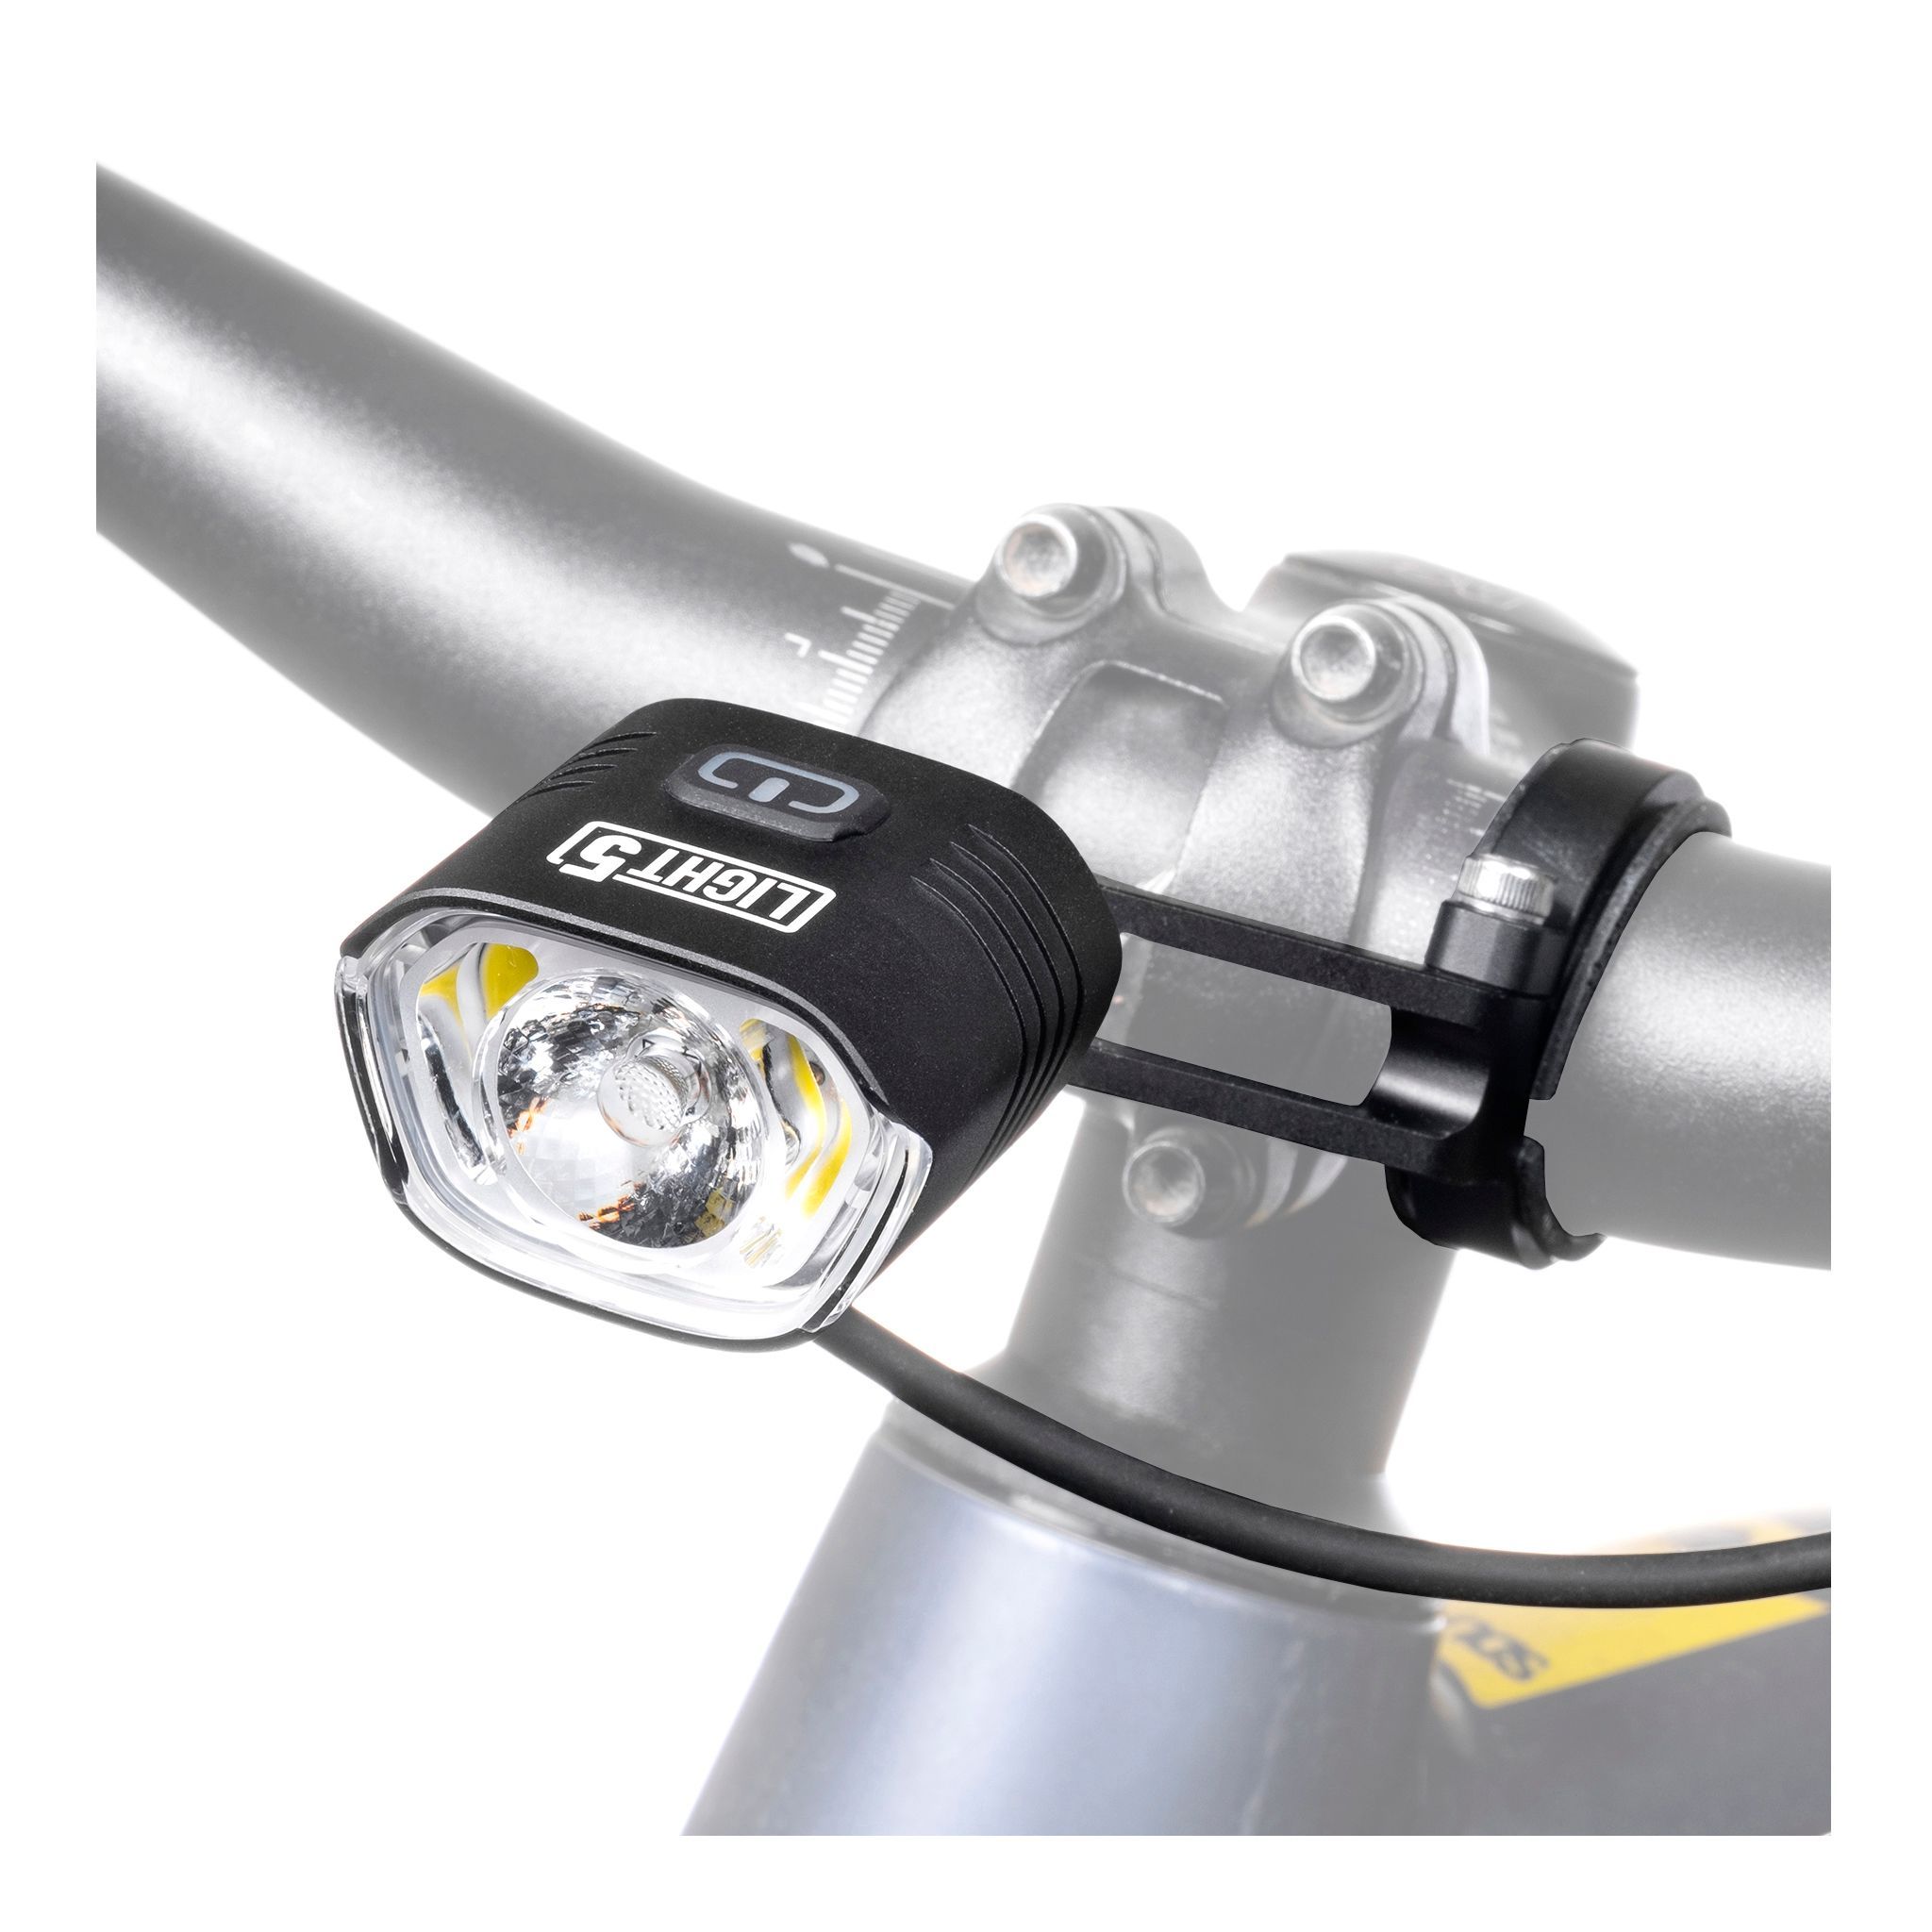 Cykellampa för elcykel Light5 EB1000, till Shimano, 1000 lm, Endast framlampa